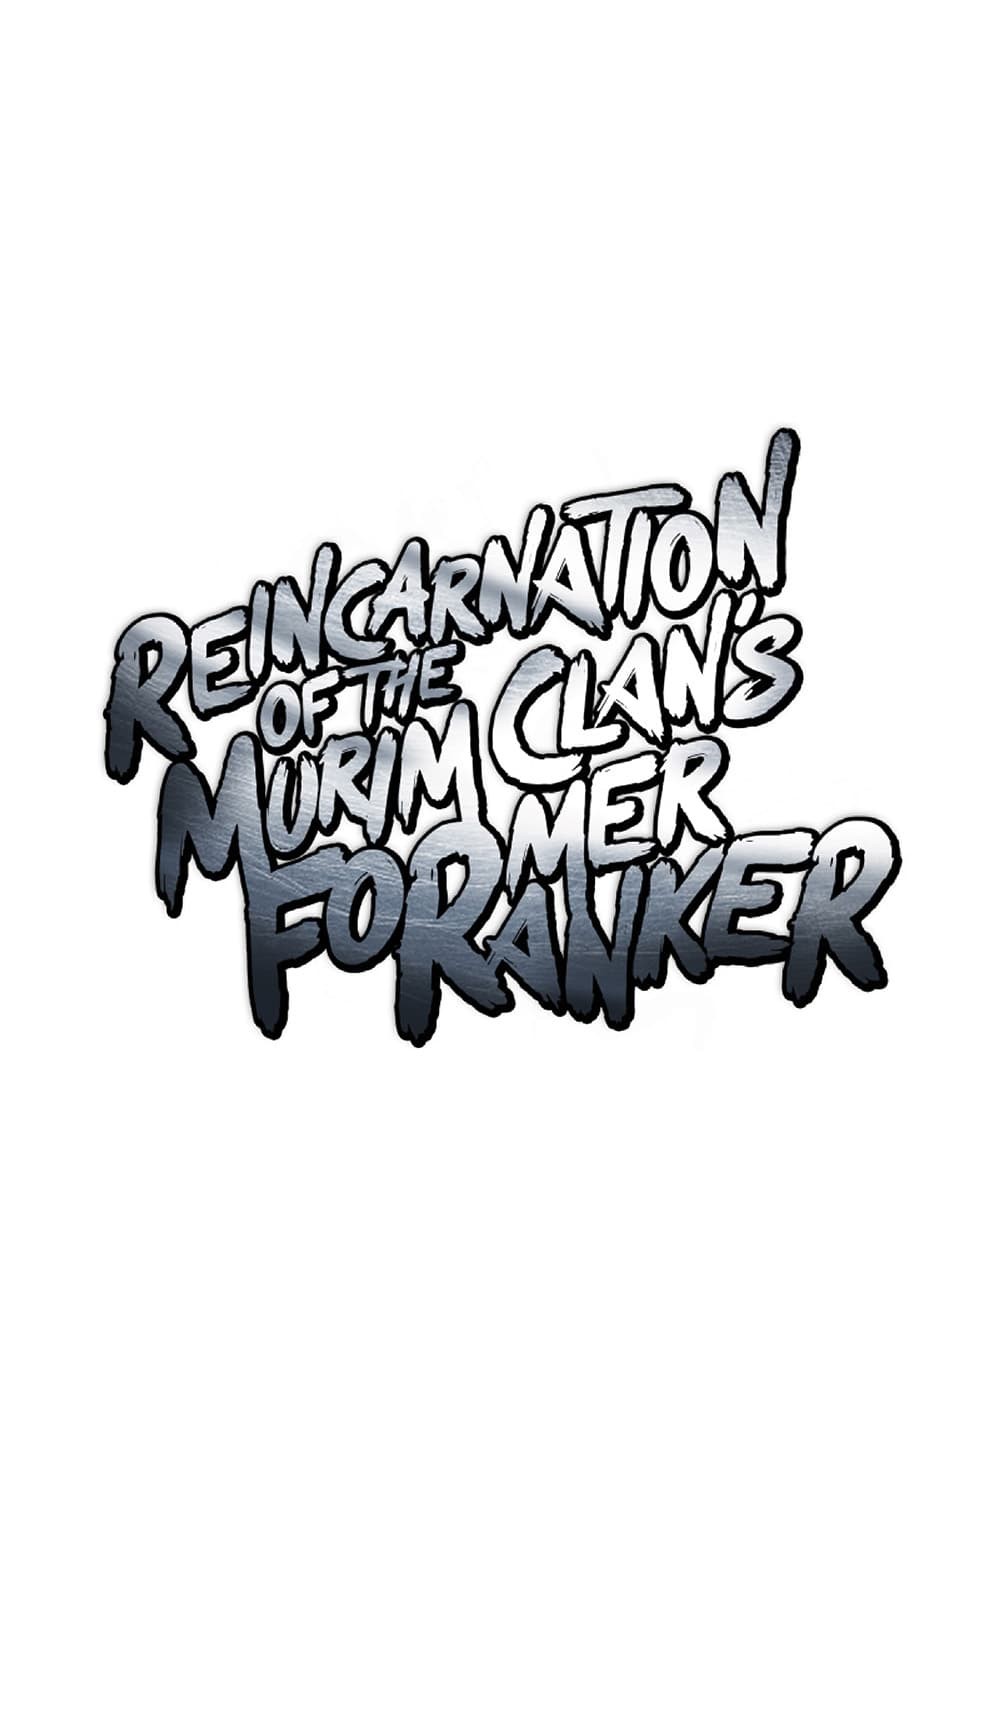 Reincarnation-of-the-Murim-Clans-Former-Ranker-30_28.jpg